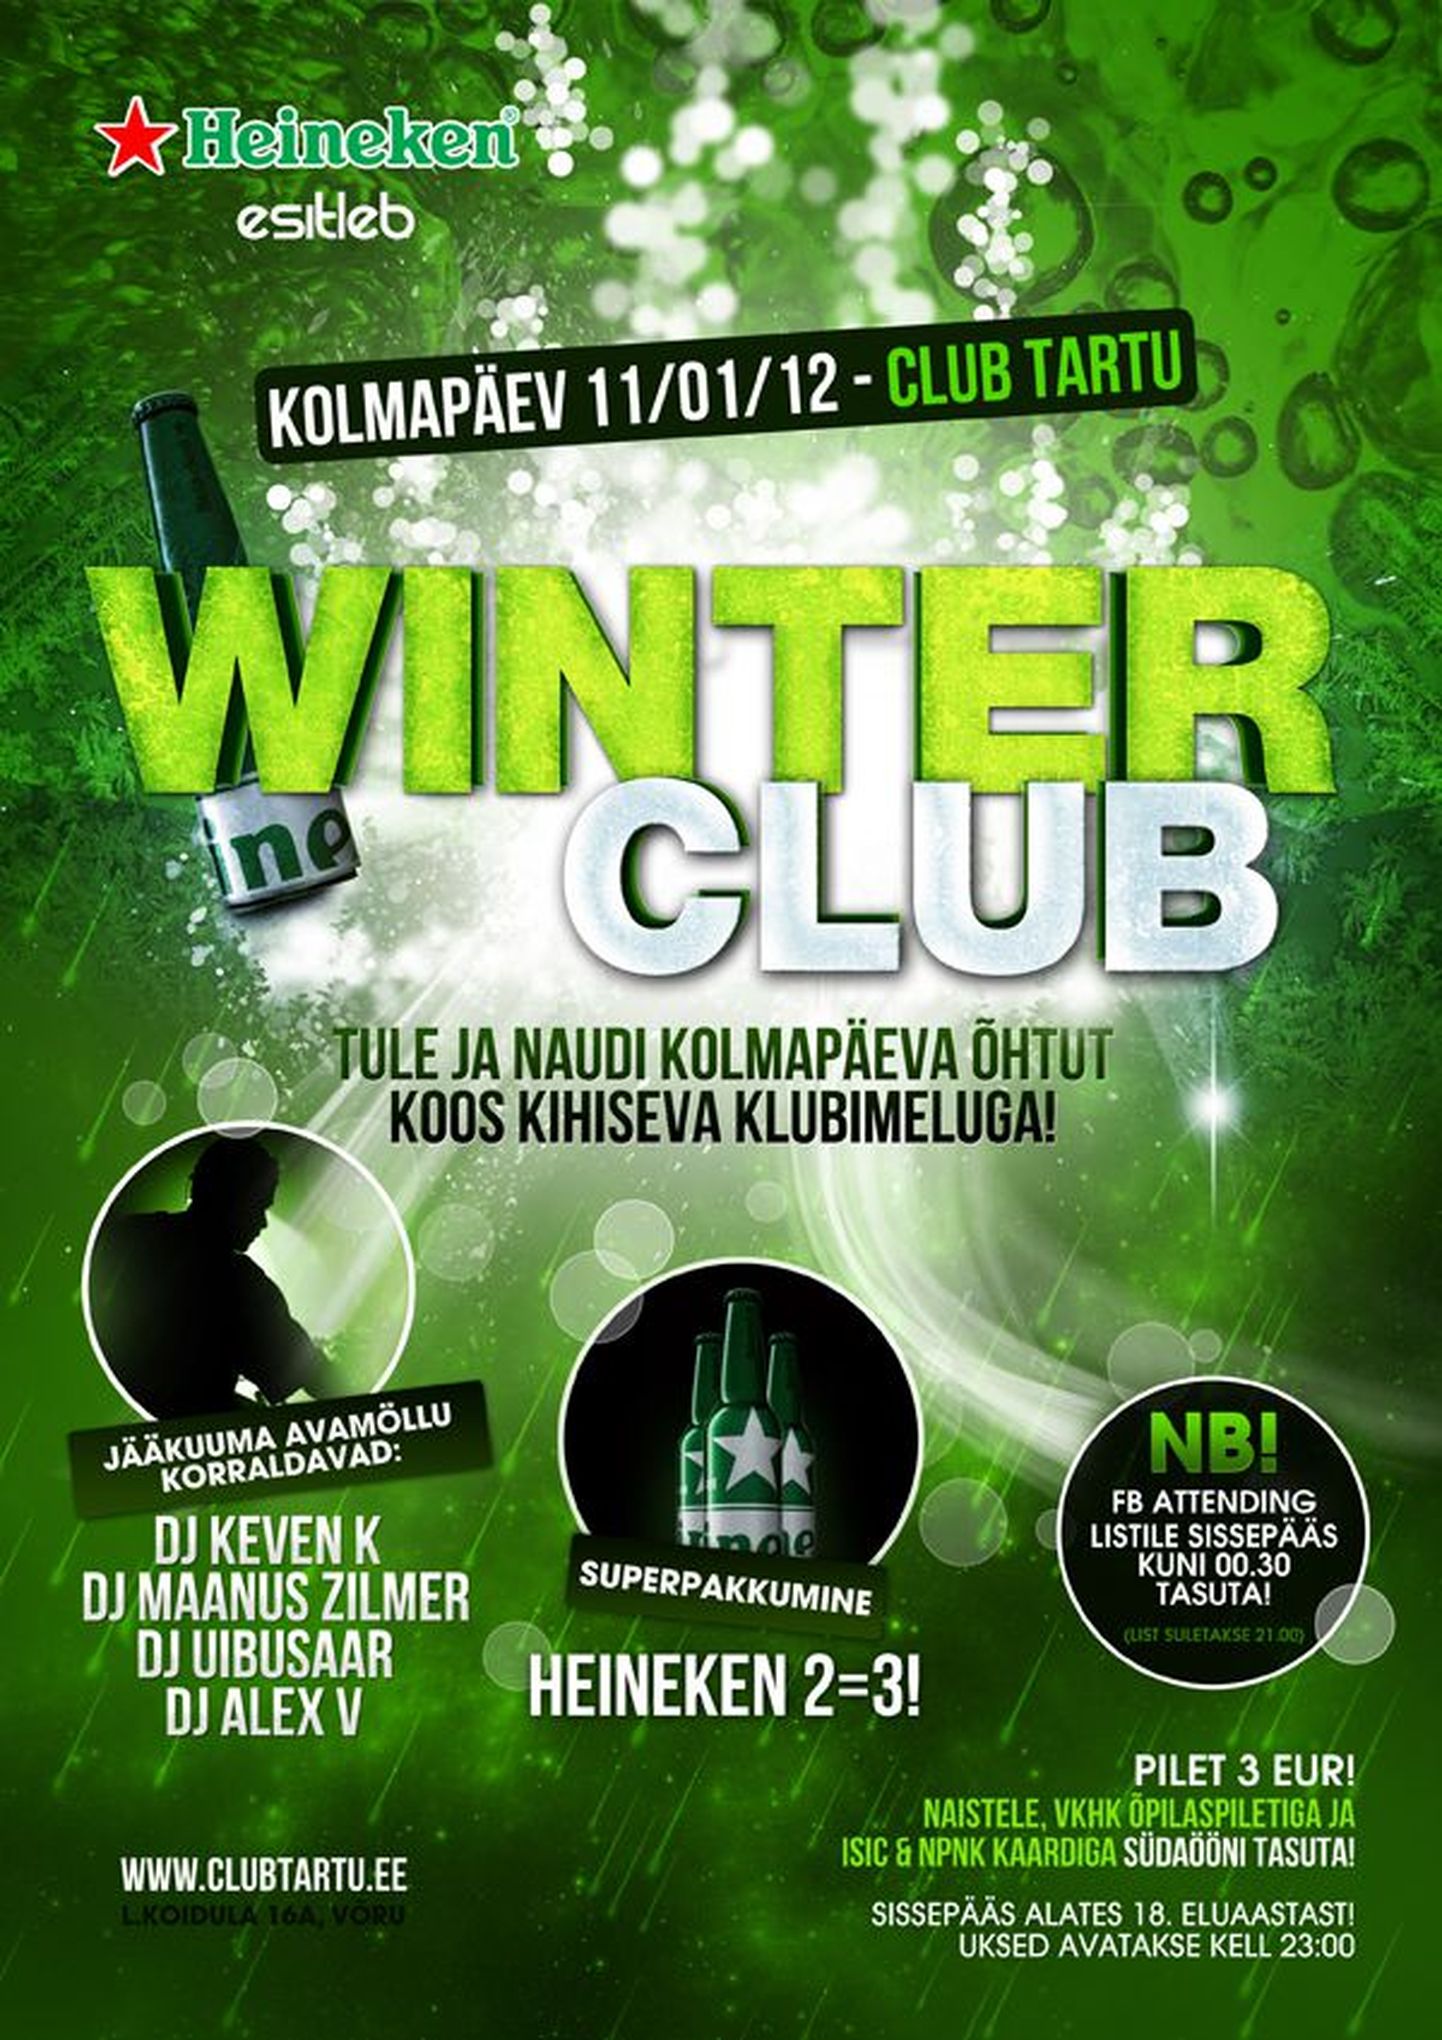 Club Tartu alustab uuel aastalkolmapäevase talvemölluga!